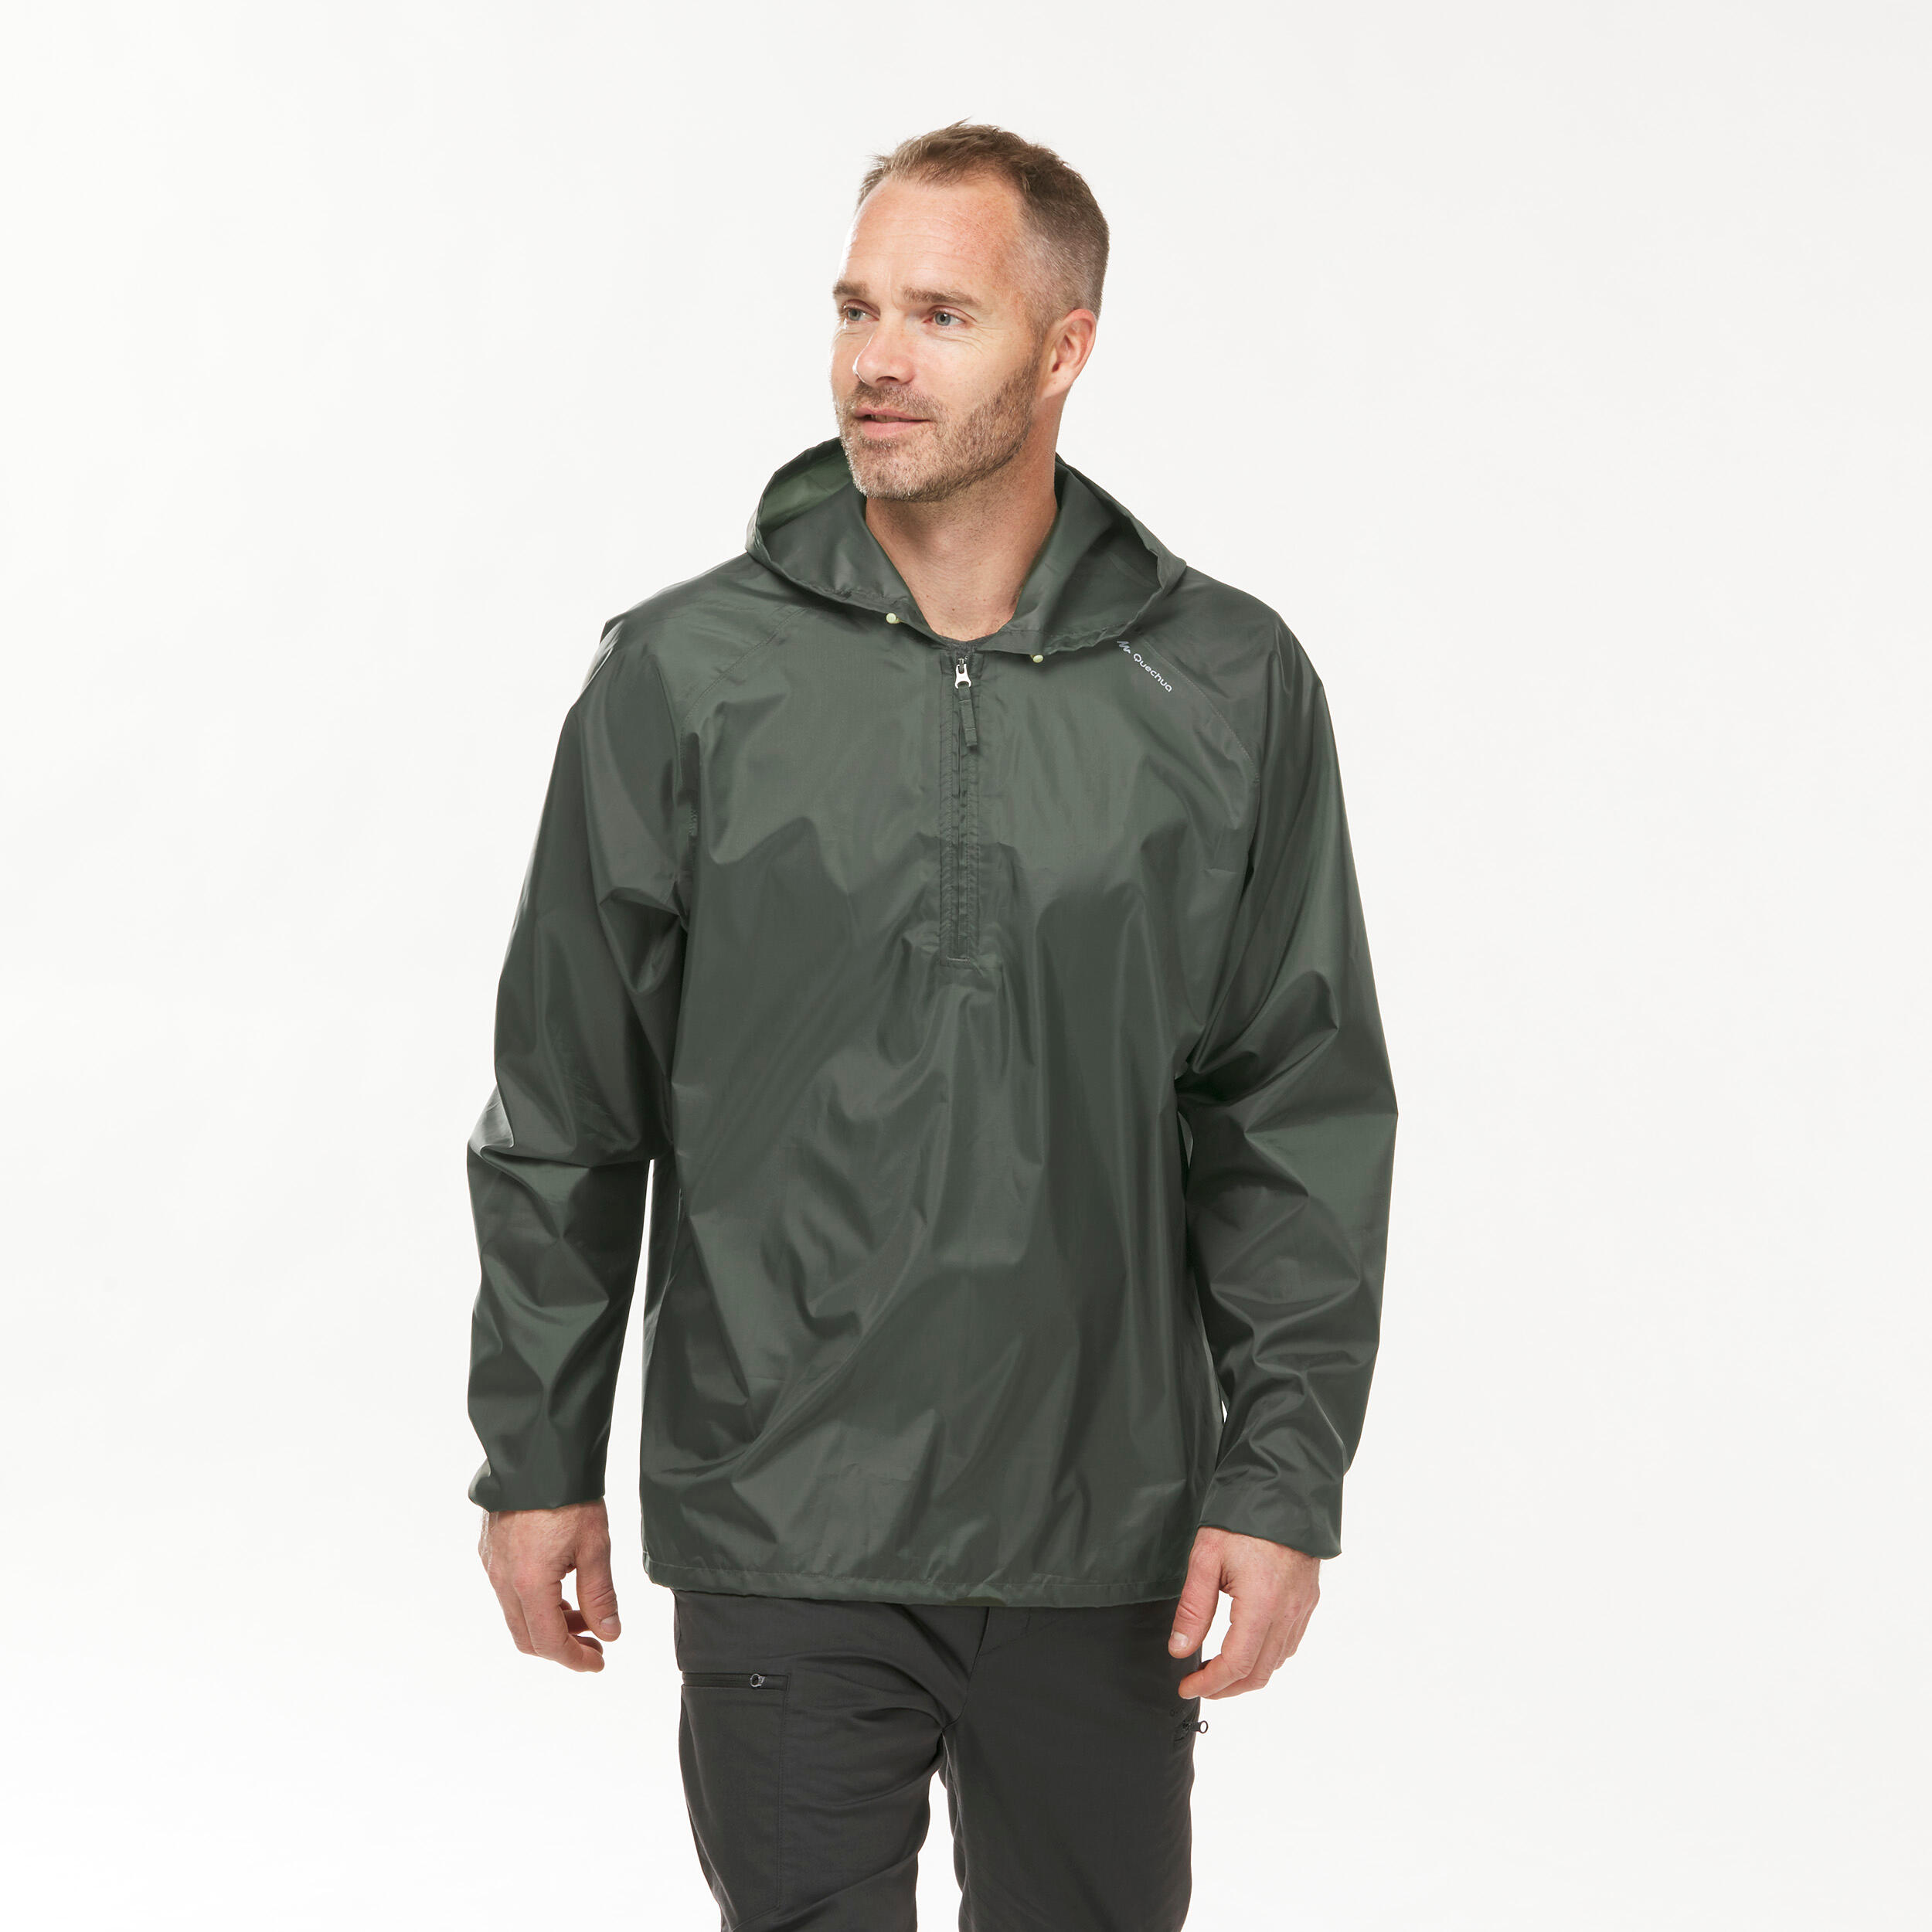 Men's Windproof and Water-repellent Hiking Jacket - Raincut 1/2 Zip 8/9